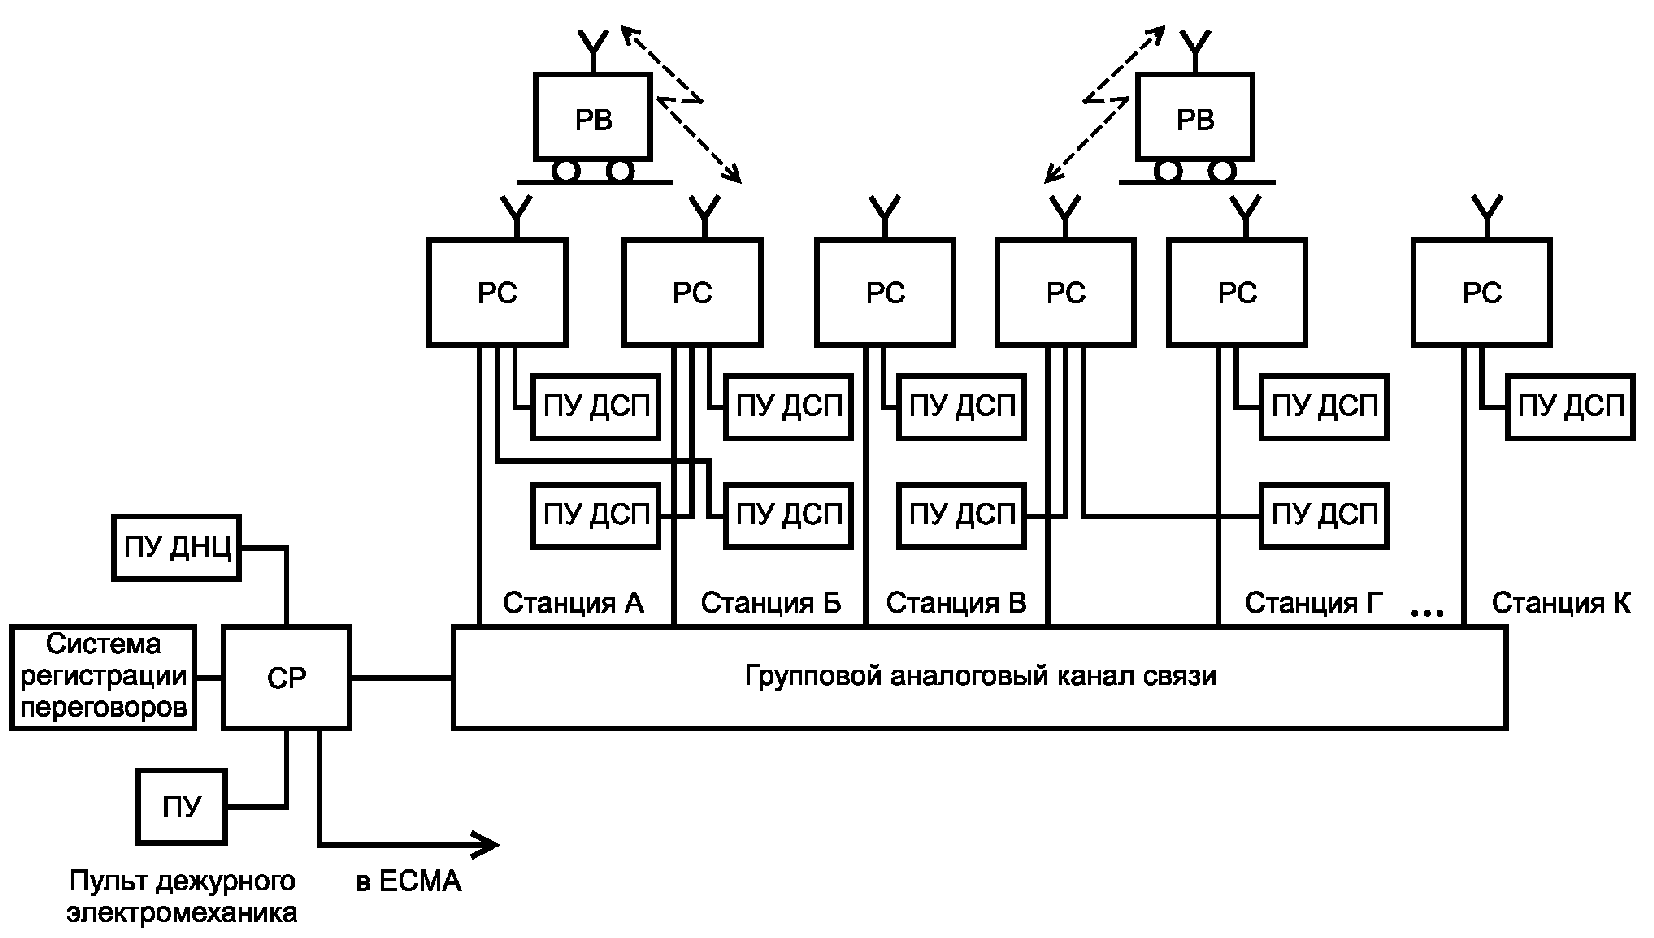 Схема симплексной сети поездной радиосвязи